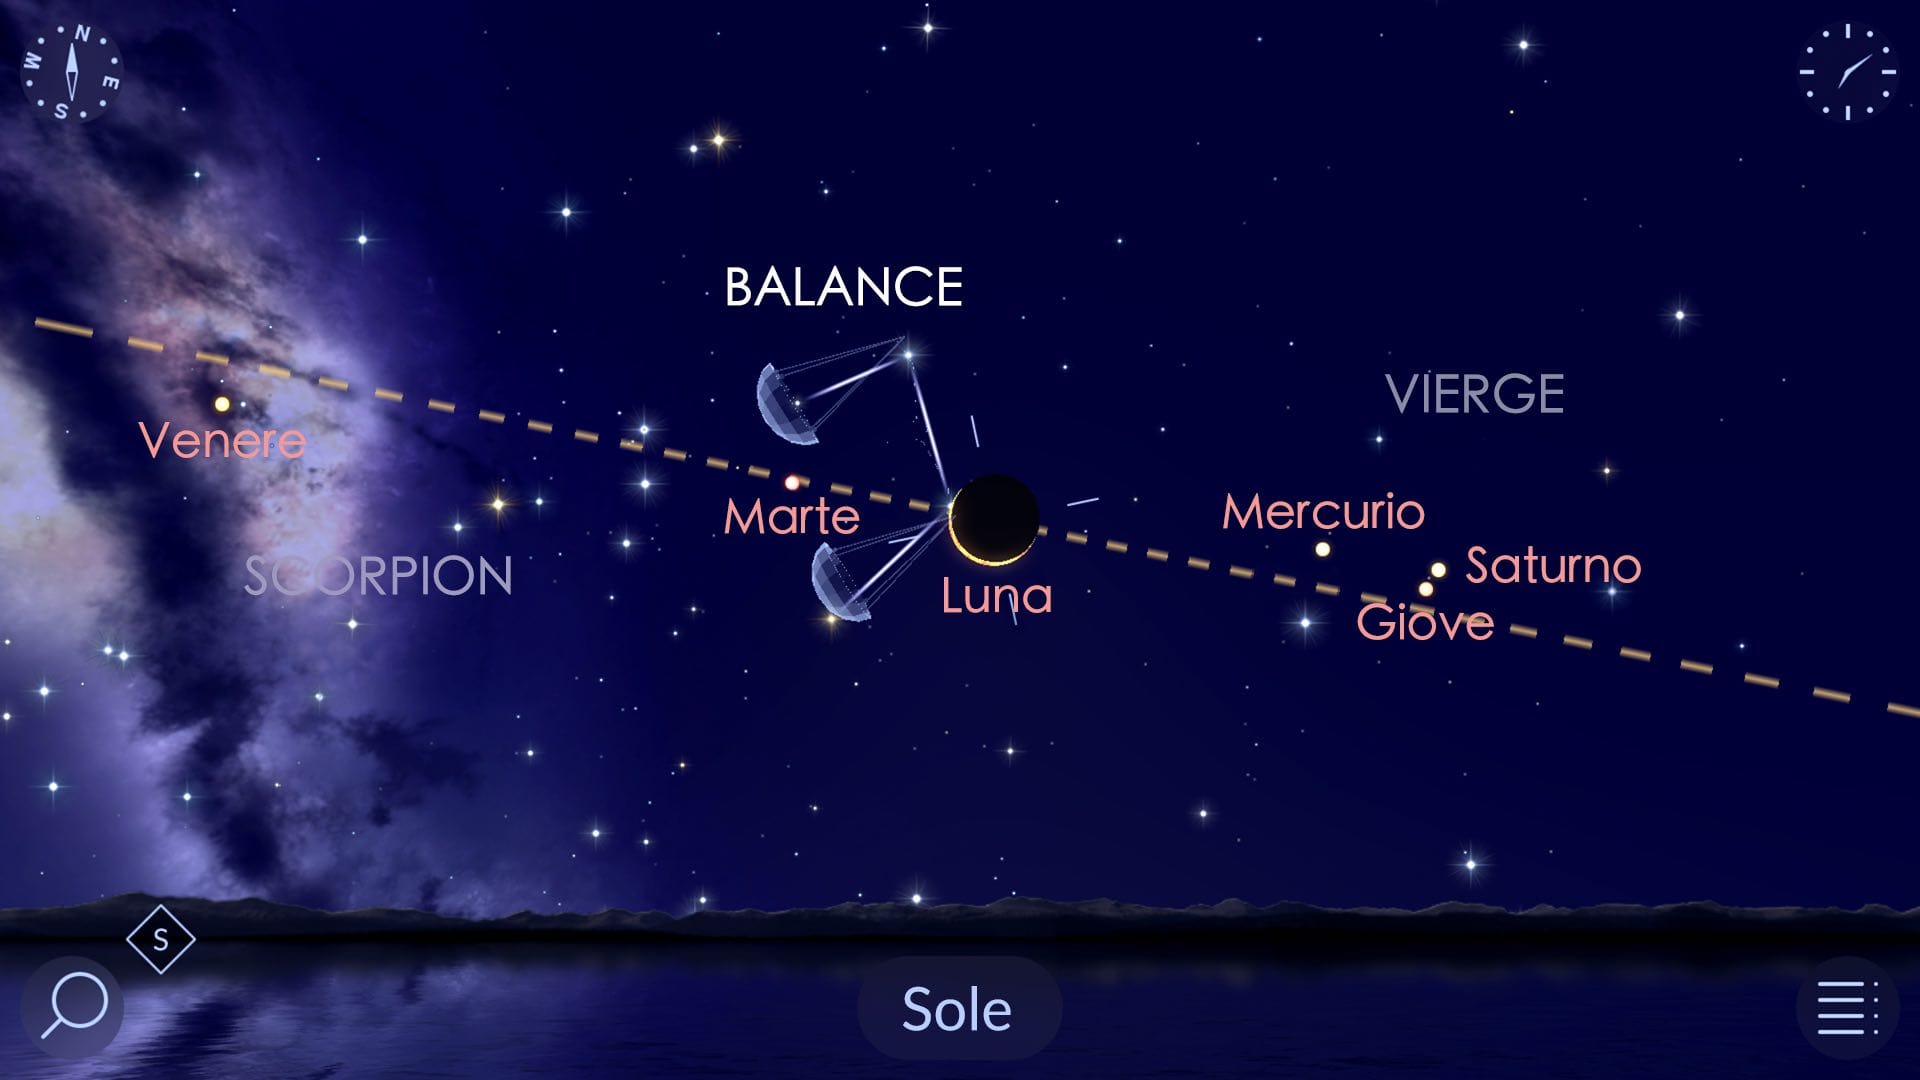 L'eclissi solare e l'allineamento planetario del 4 novembre 2040, in Star Walk 2